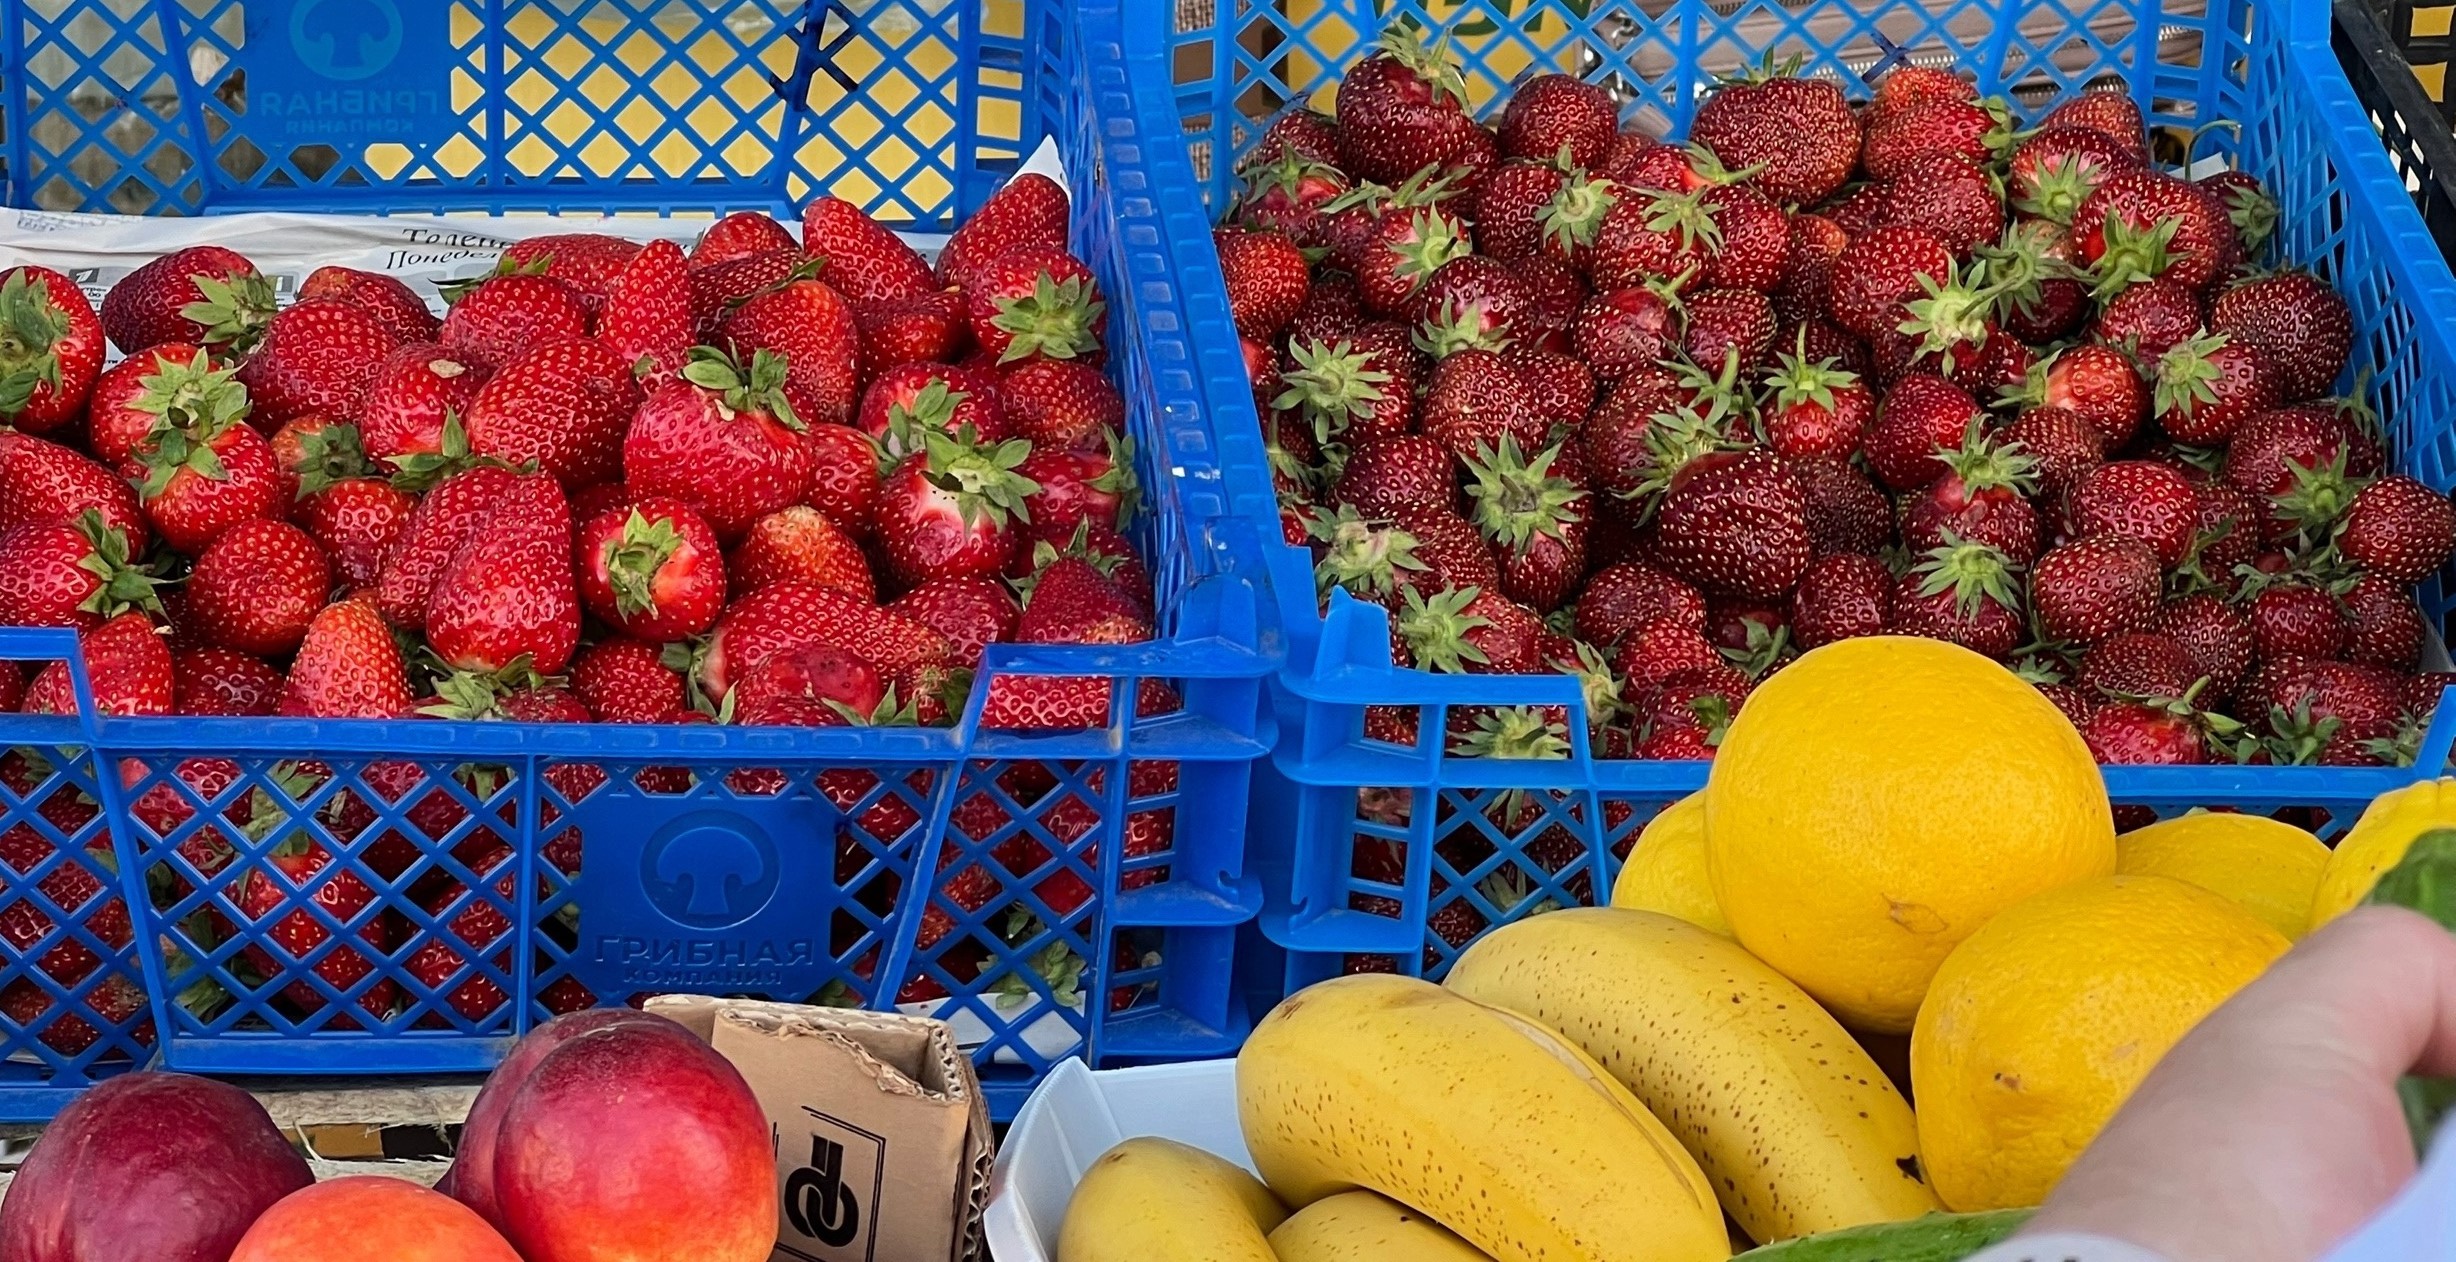 "Ну и юг": туристы рассказали об июльских ценах на фрукты и ягоды в Анапе